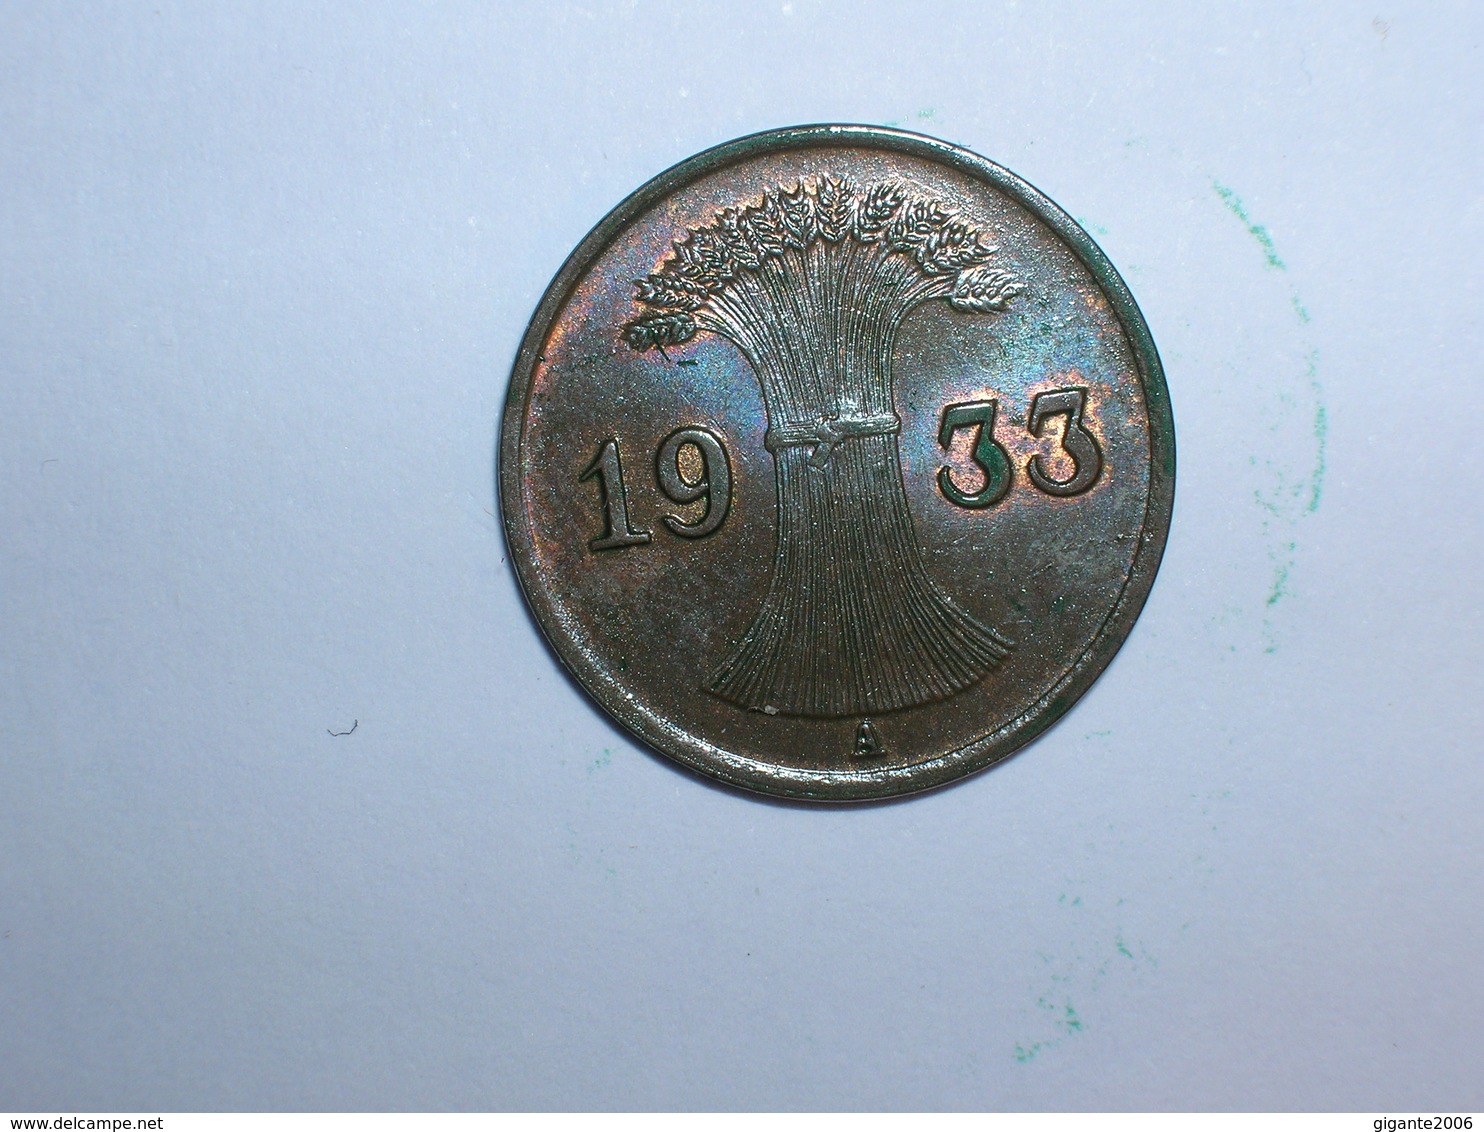 ALEMANIA 1 REICHPFENNIG 1933 A (1143) - 1 Reichspfennig